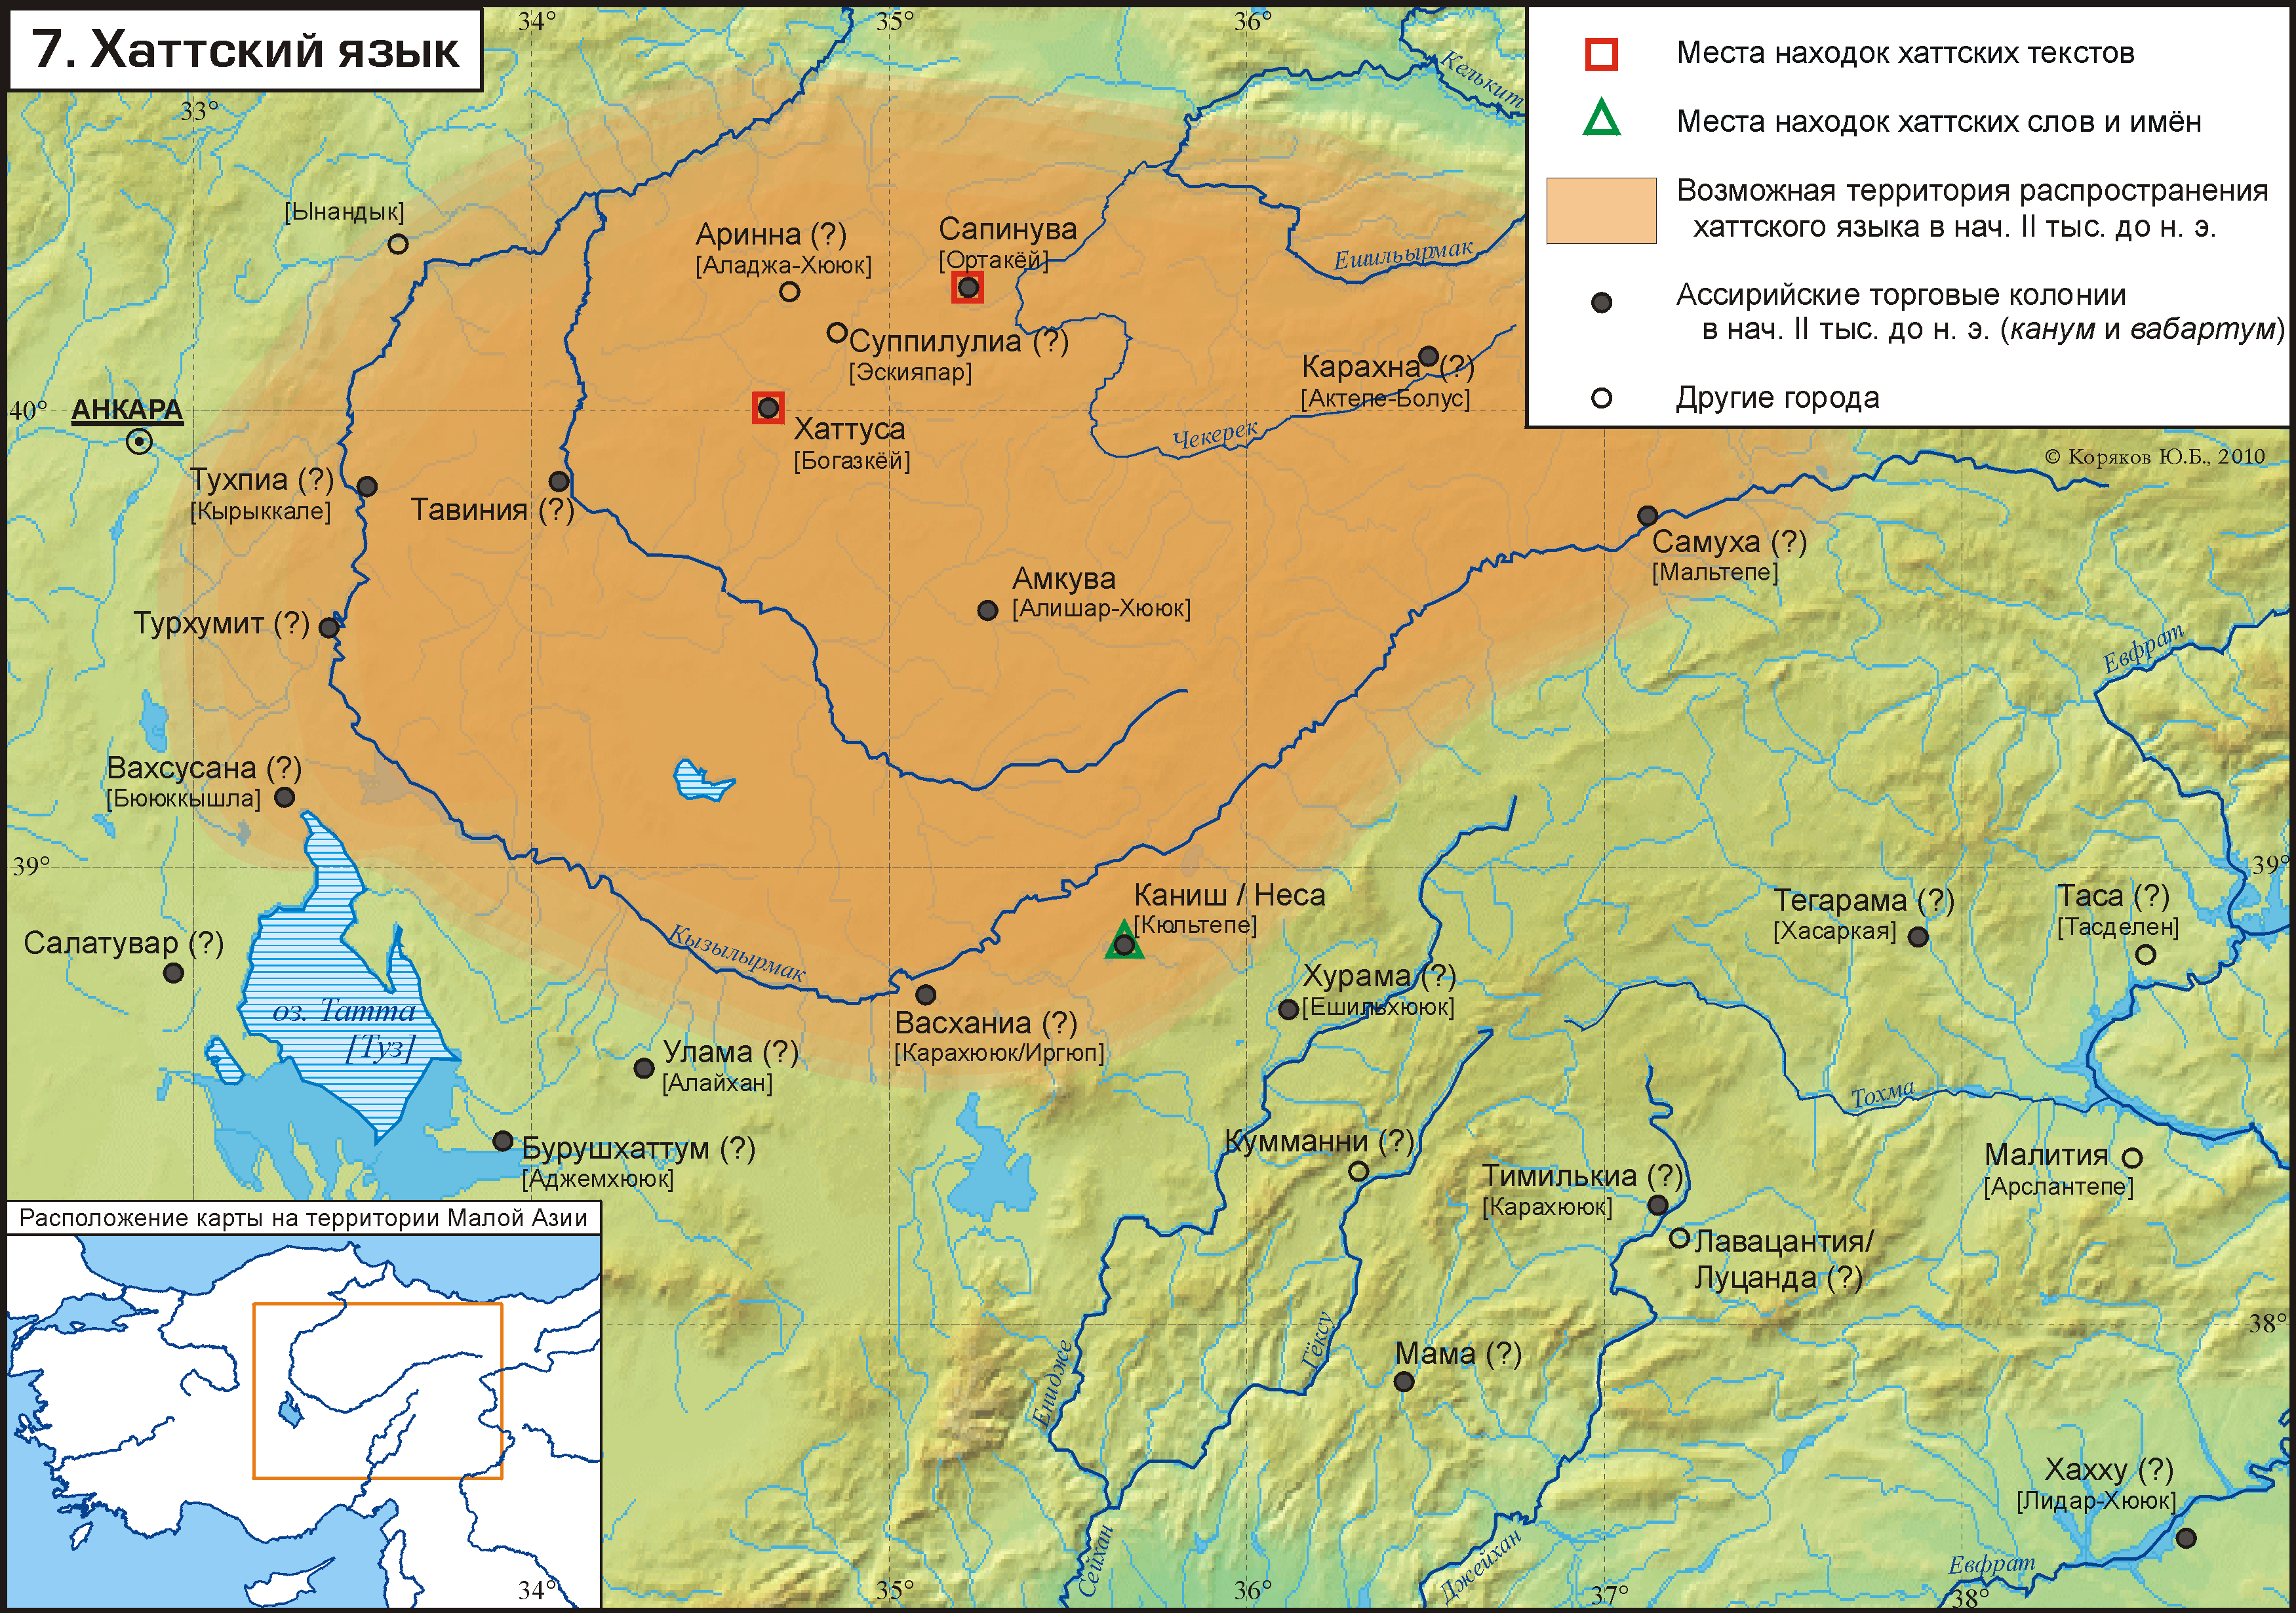 Карта распространения древних хаттов